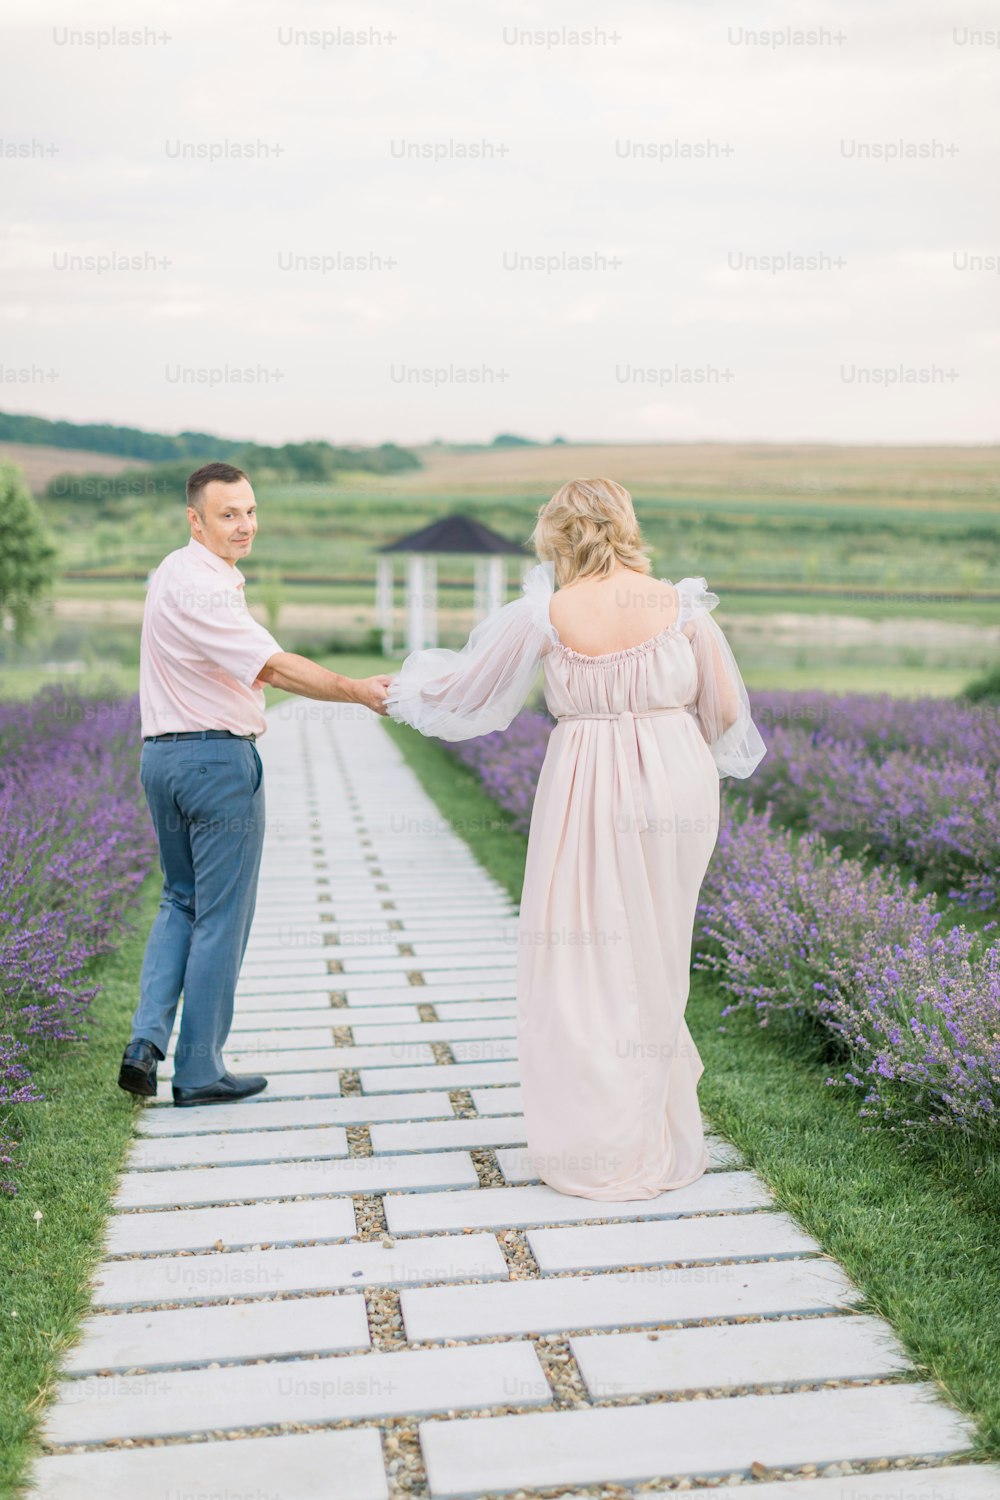 Toma al aire libre de una pareja madura romántica feliz enamorada caminando por el camino a trav�és del campo de lavanda en flor, tomados de la mano y disfrutando de momentos juntos